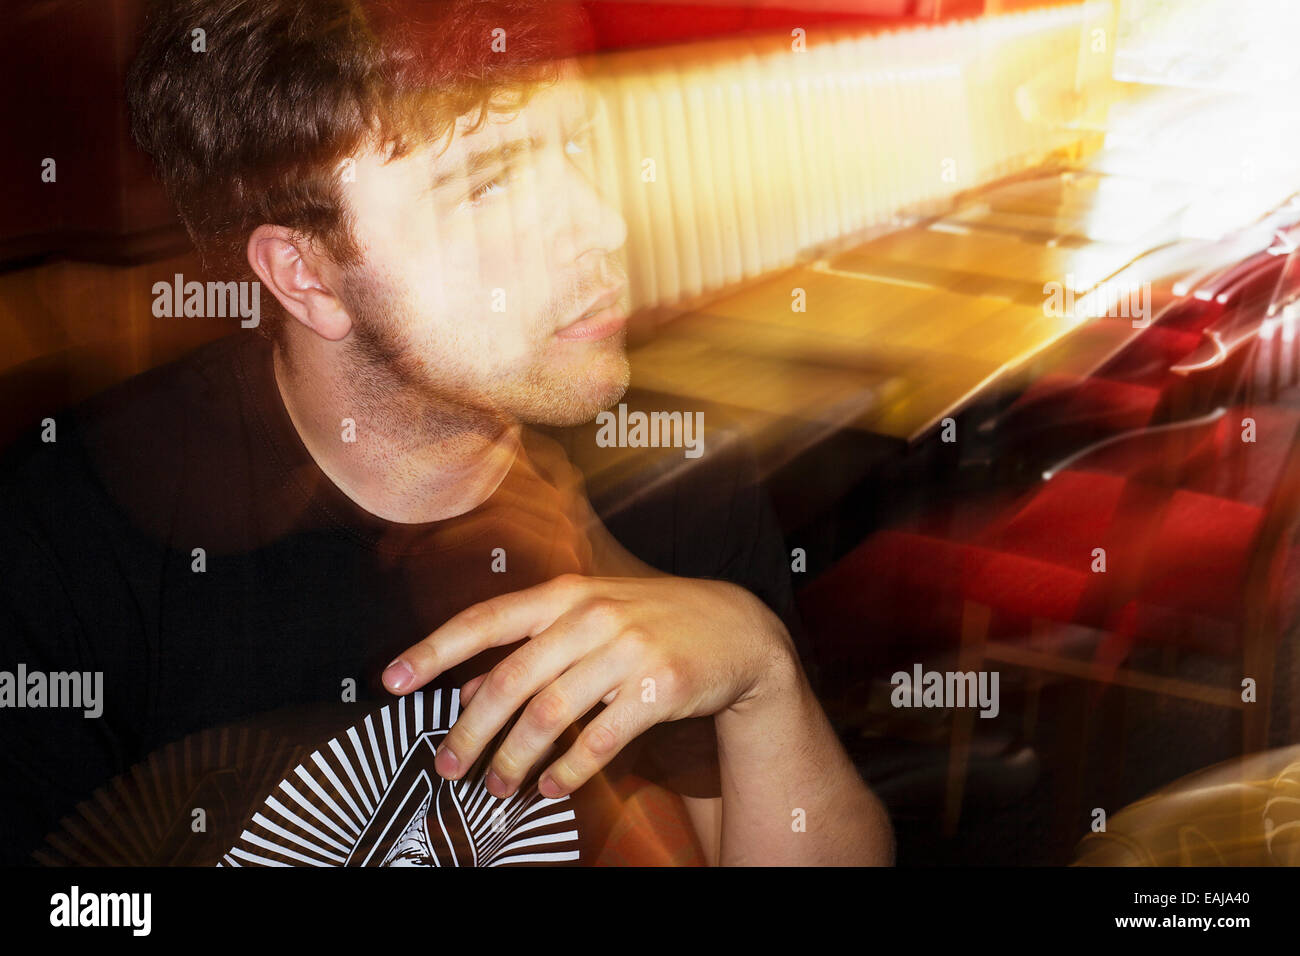 Un homme blanc de 19 ans dans un café tourné au Royaume-Uni, l'image est en couleur avec flash blur Banque D'Images